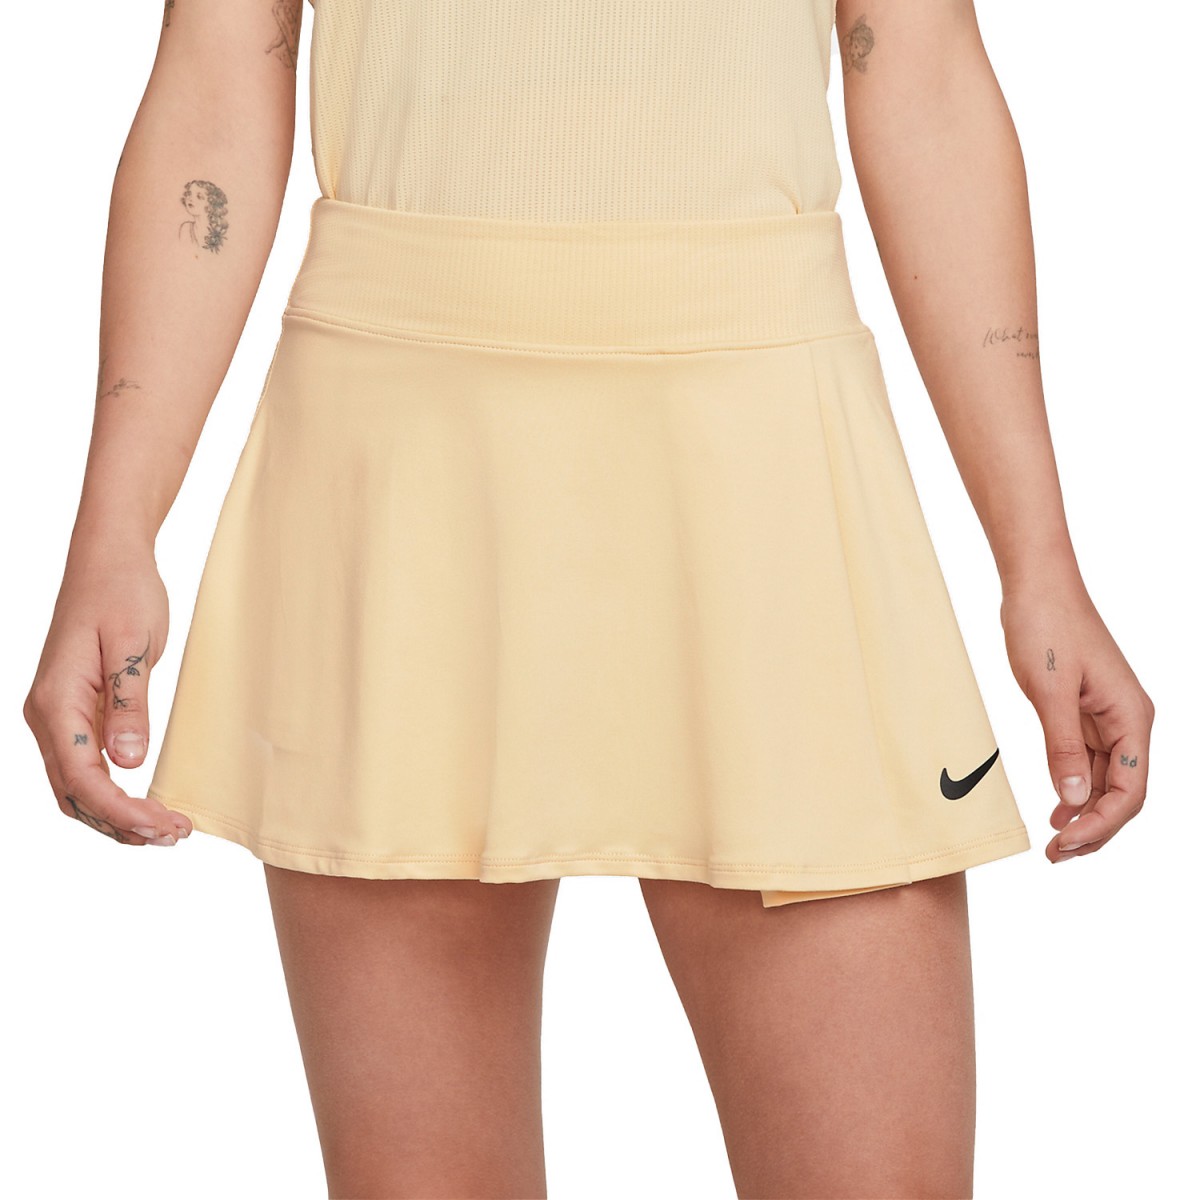 Теннисная юбка женская Nike Flouncy Skirt pale vanilla/black